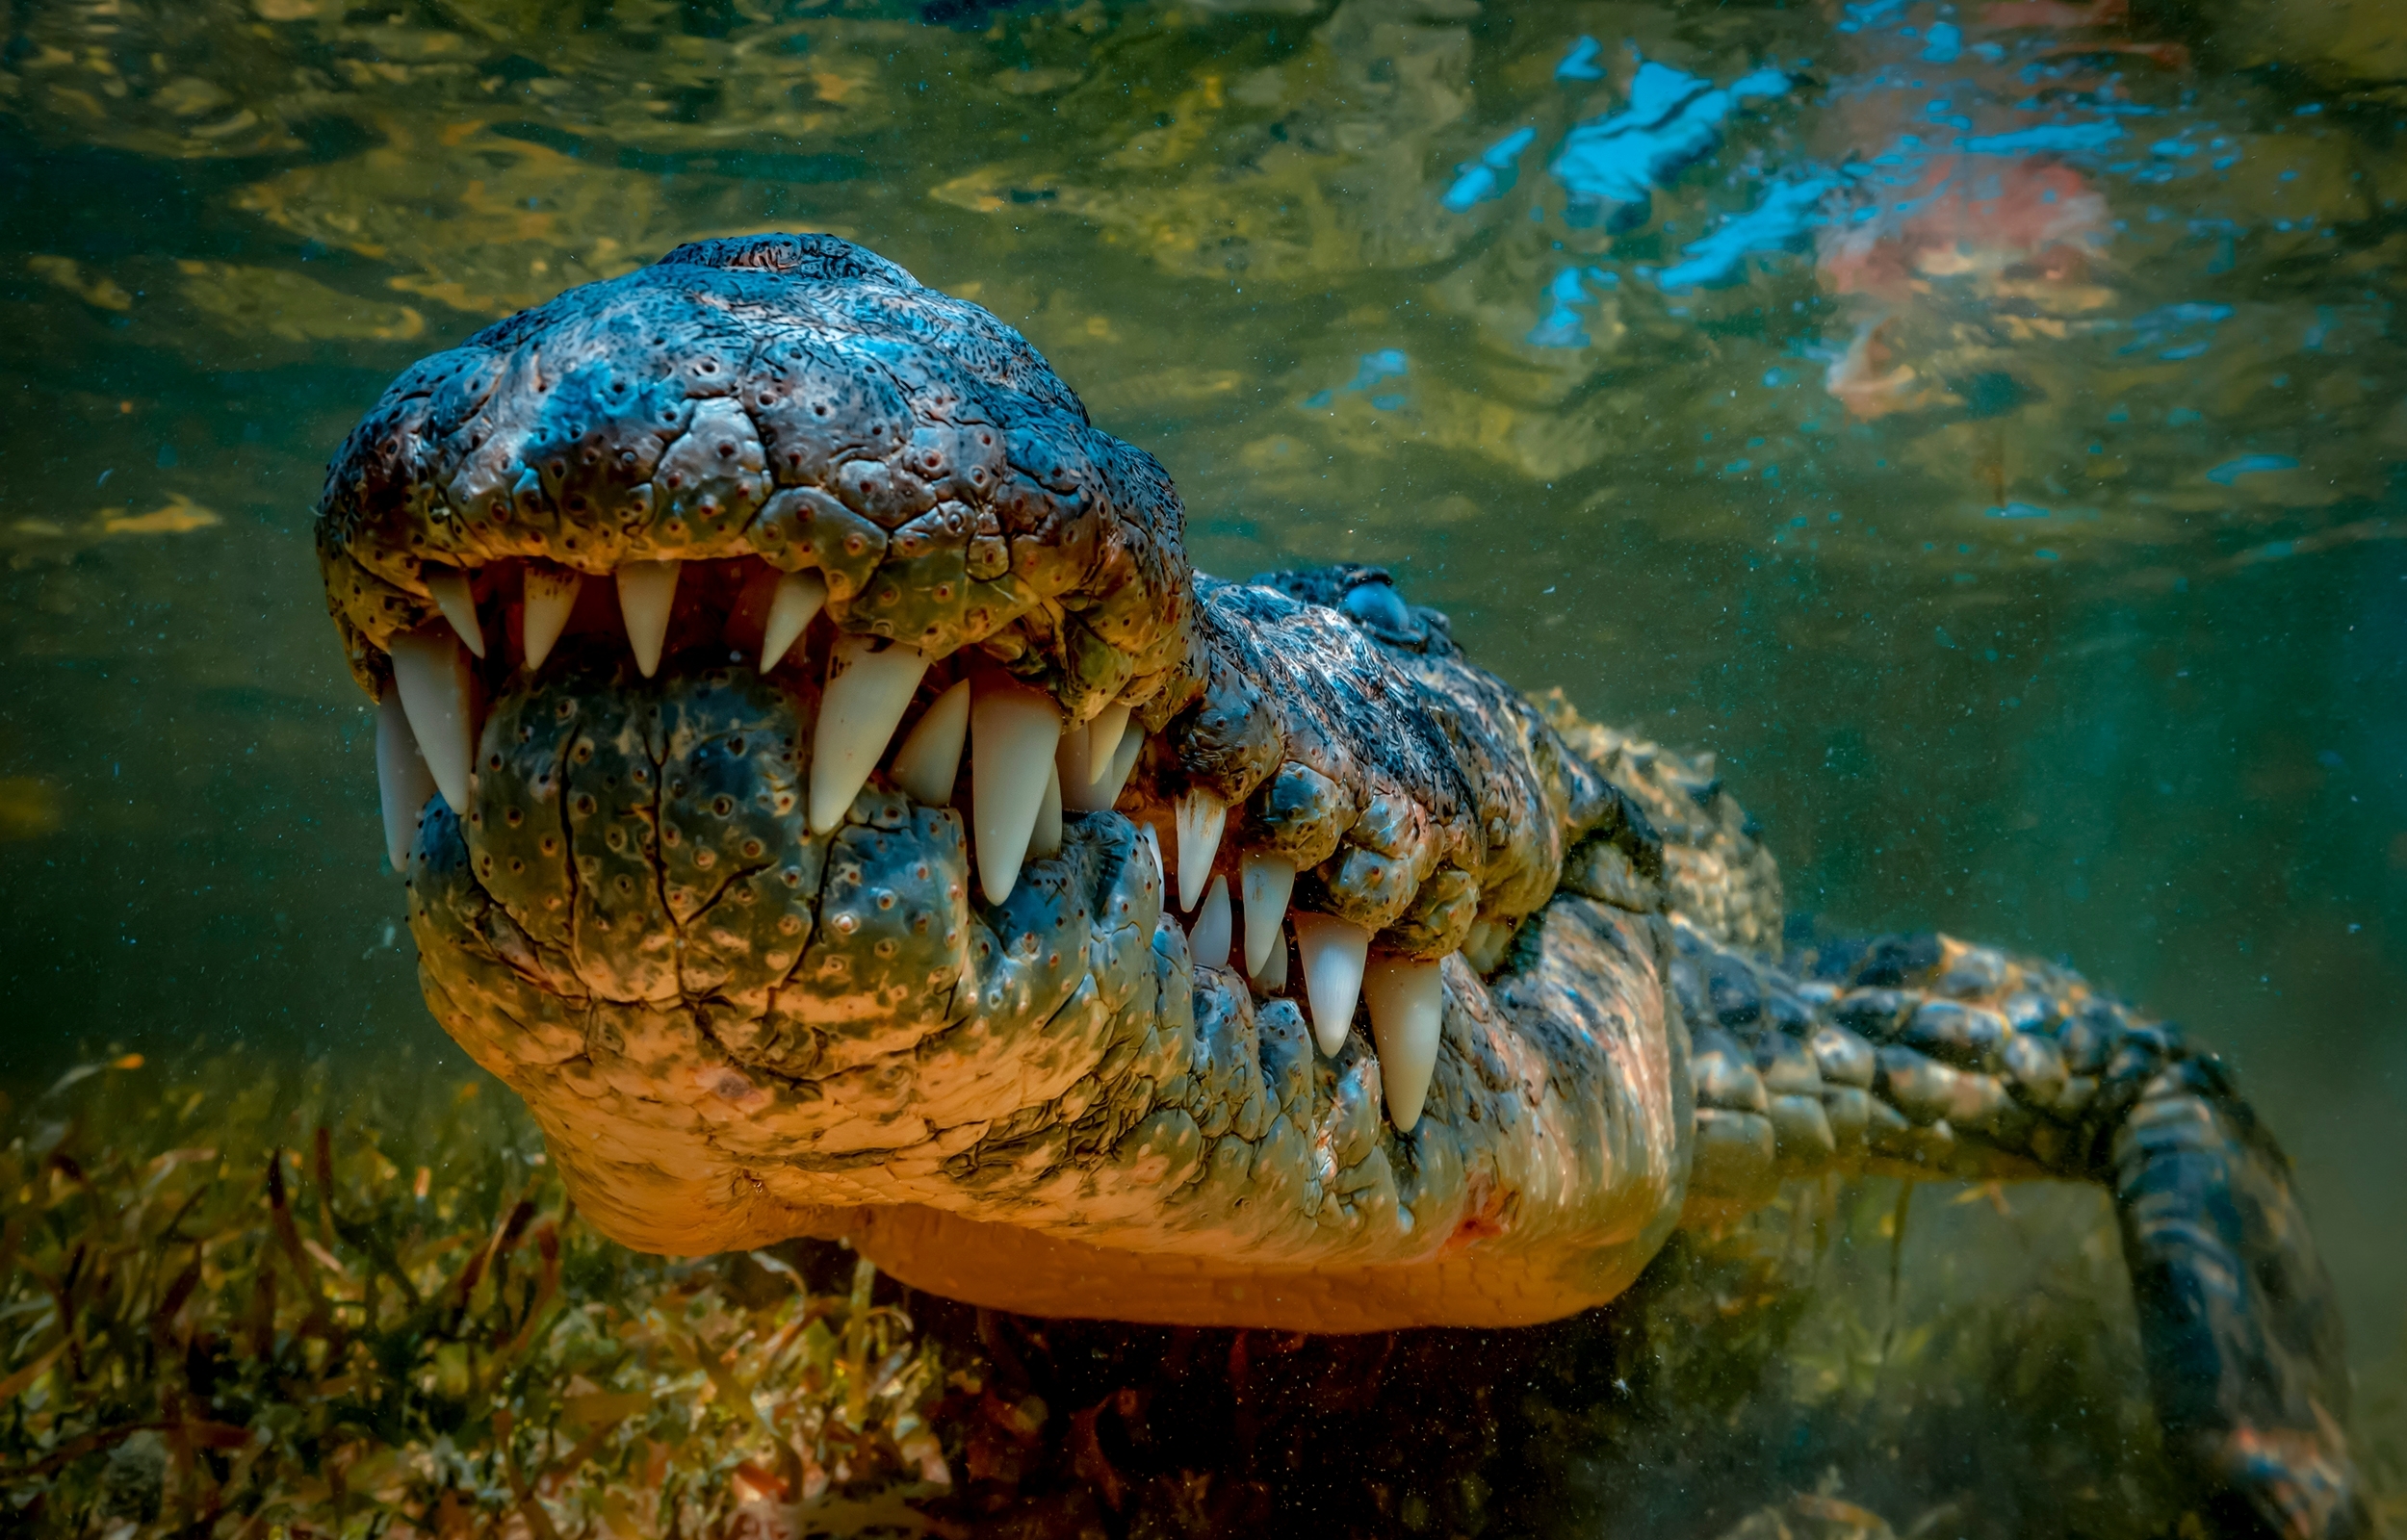 Vieux de 4,5 millions d’années, le fossile du dernier crocodile d’Europe a été découvert en Espagne